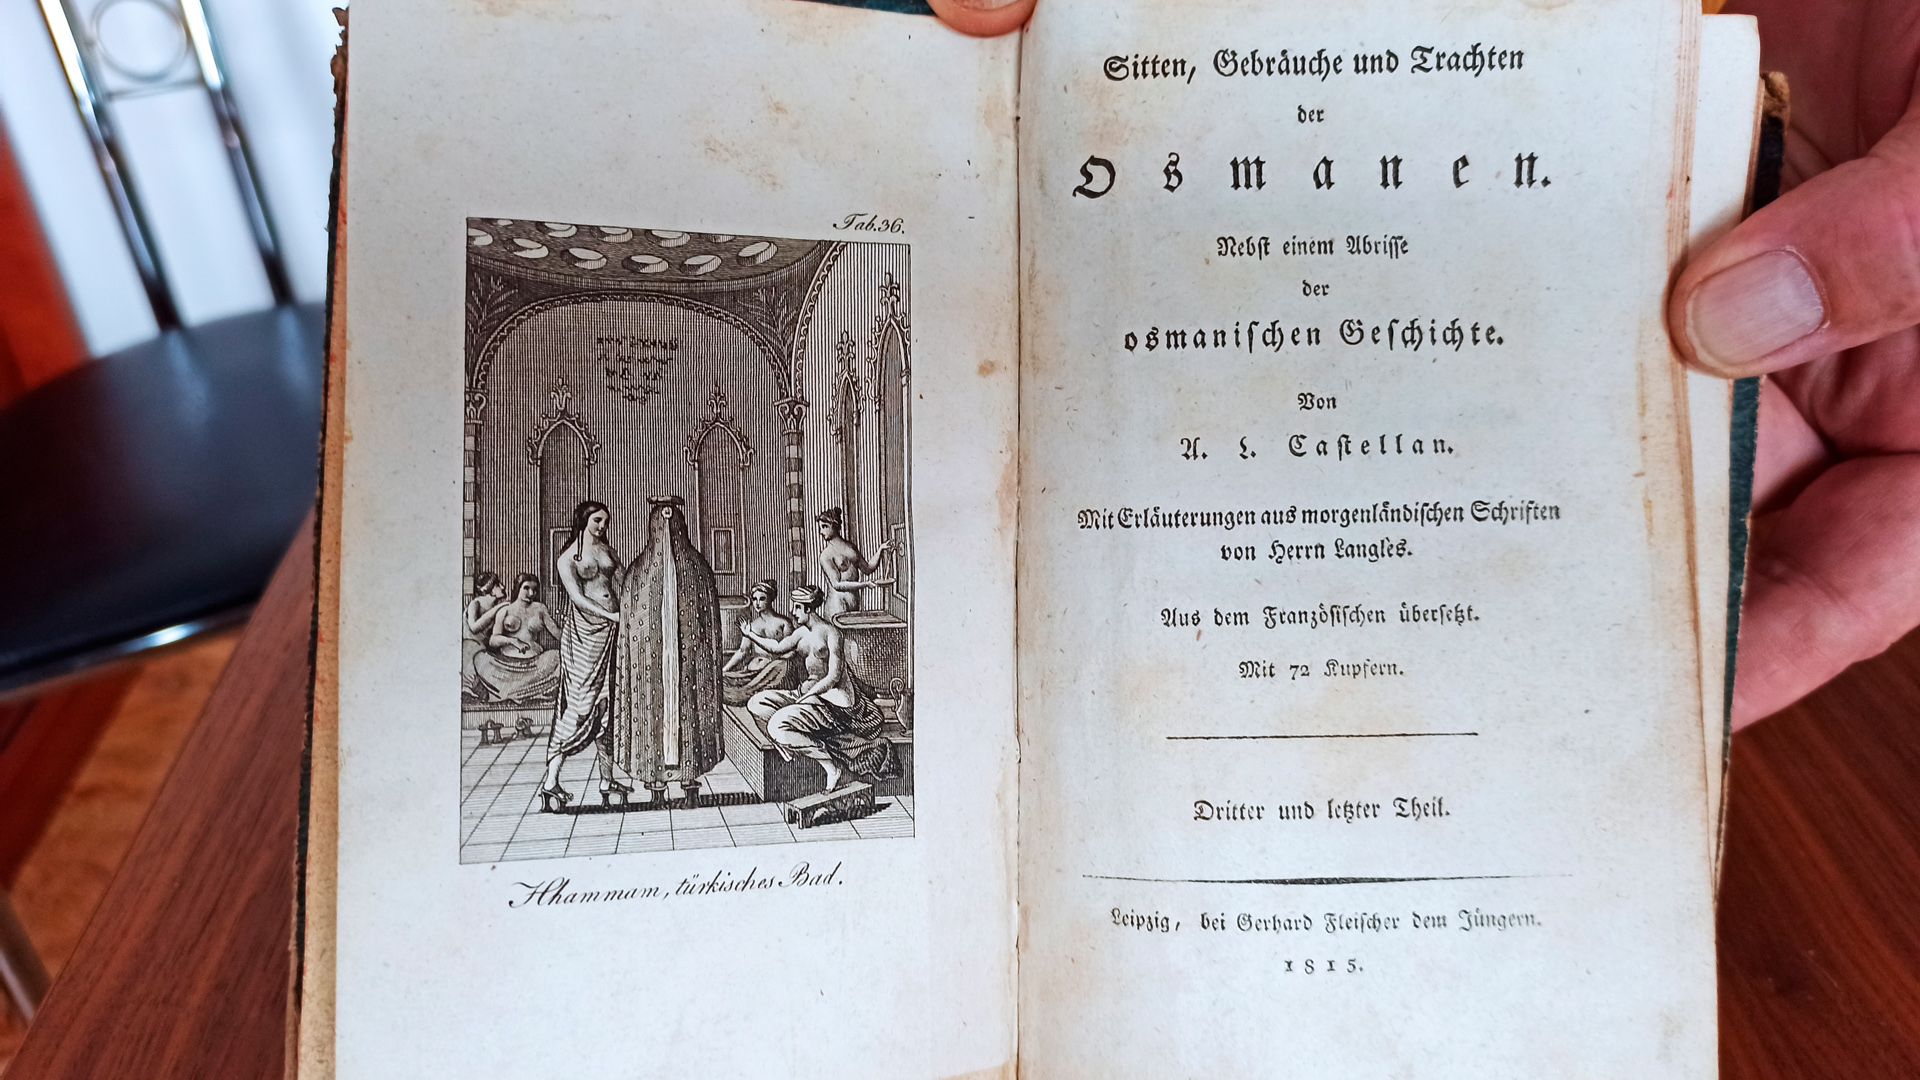 Kleines Buch ”Sitten und Gebräuche und Trachten der Osmanen”, Dritter und Letzter Theil, Leipzig, - Image 2 of 4